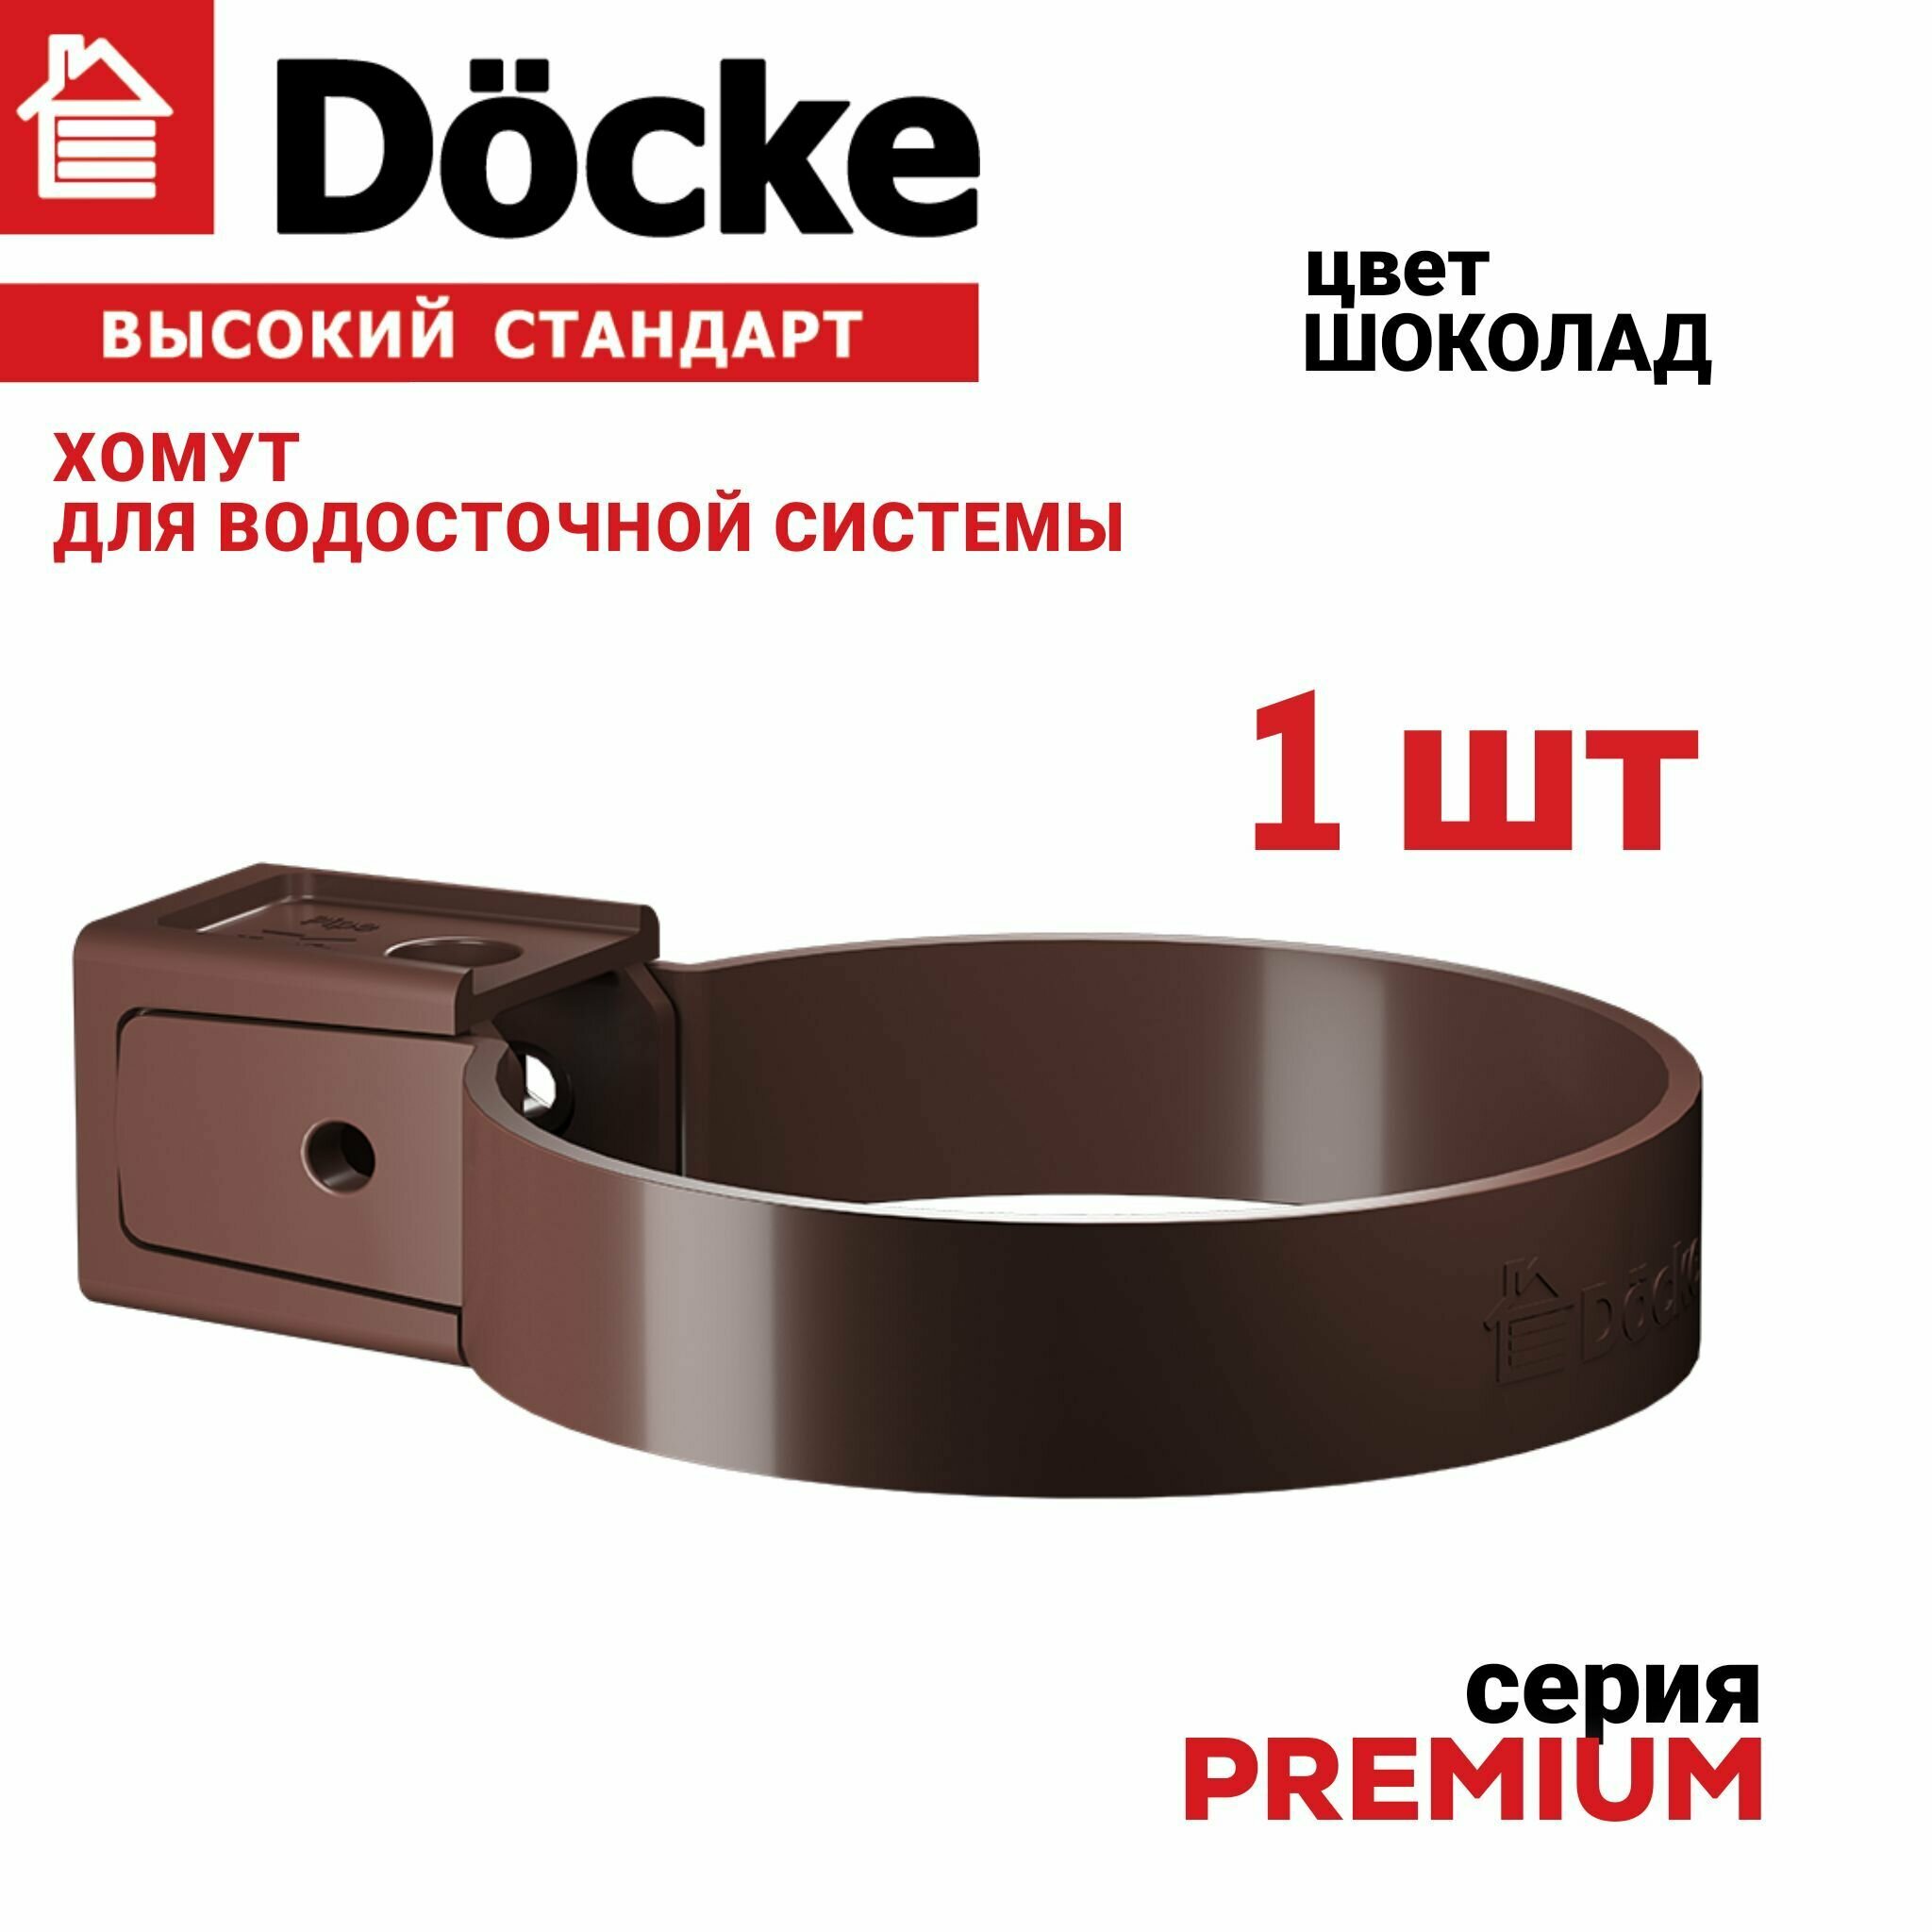 Хомут универсальный Docke Premium (шоколад), 1 шт, Крепление элементов водосточной системы на фасаде здания